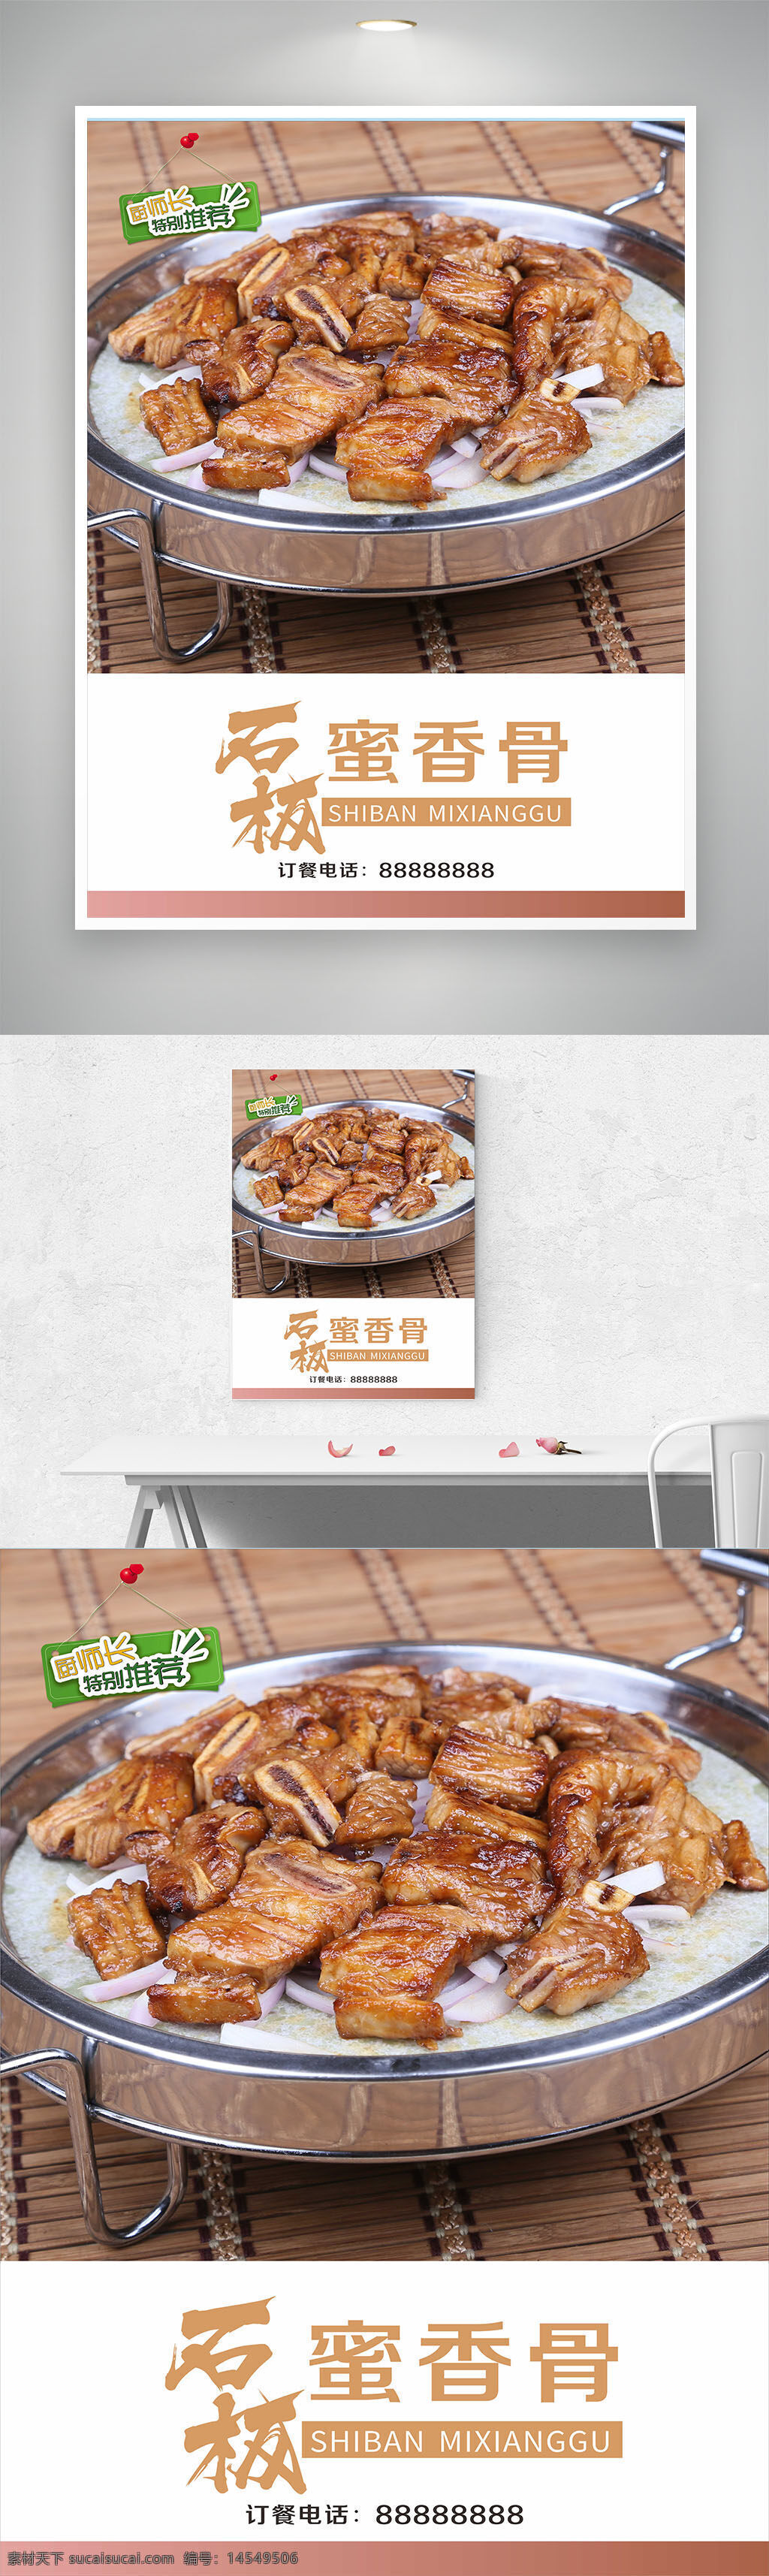 石板蜜香骨 秘制排骨 蜜汁排骨 美食 家常菜 中国特色美食